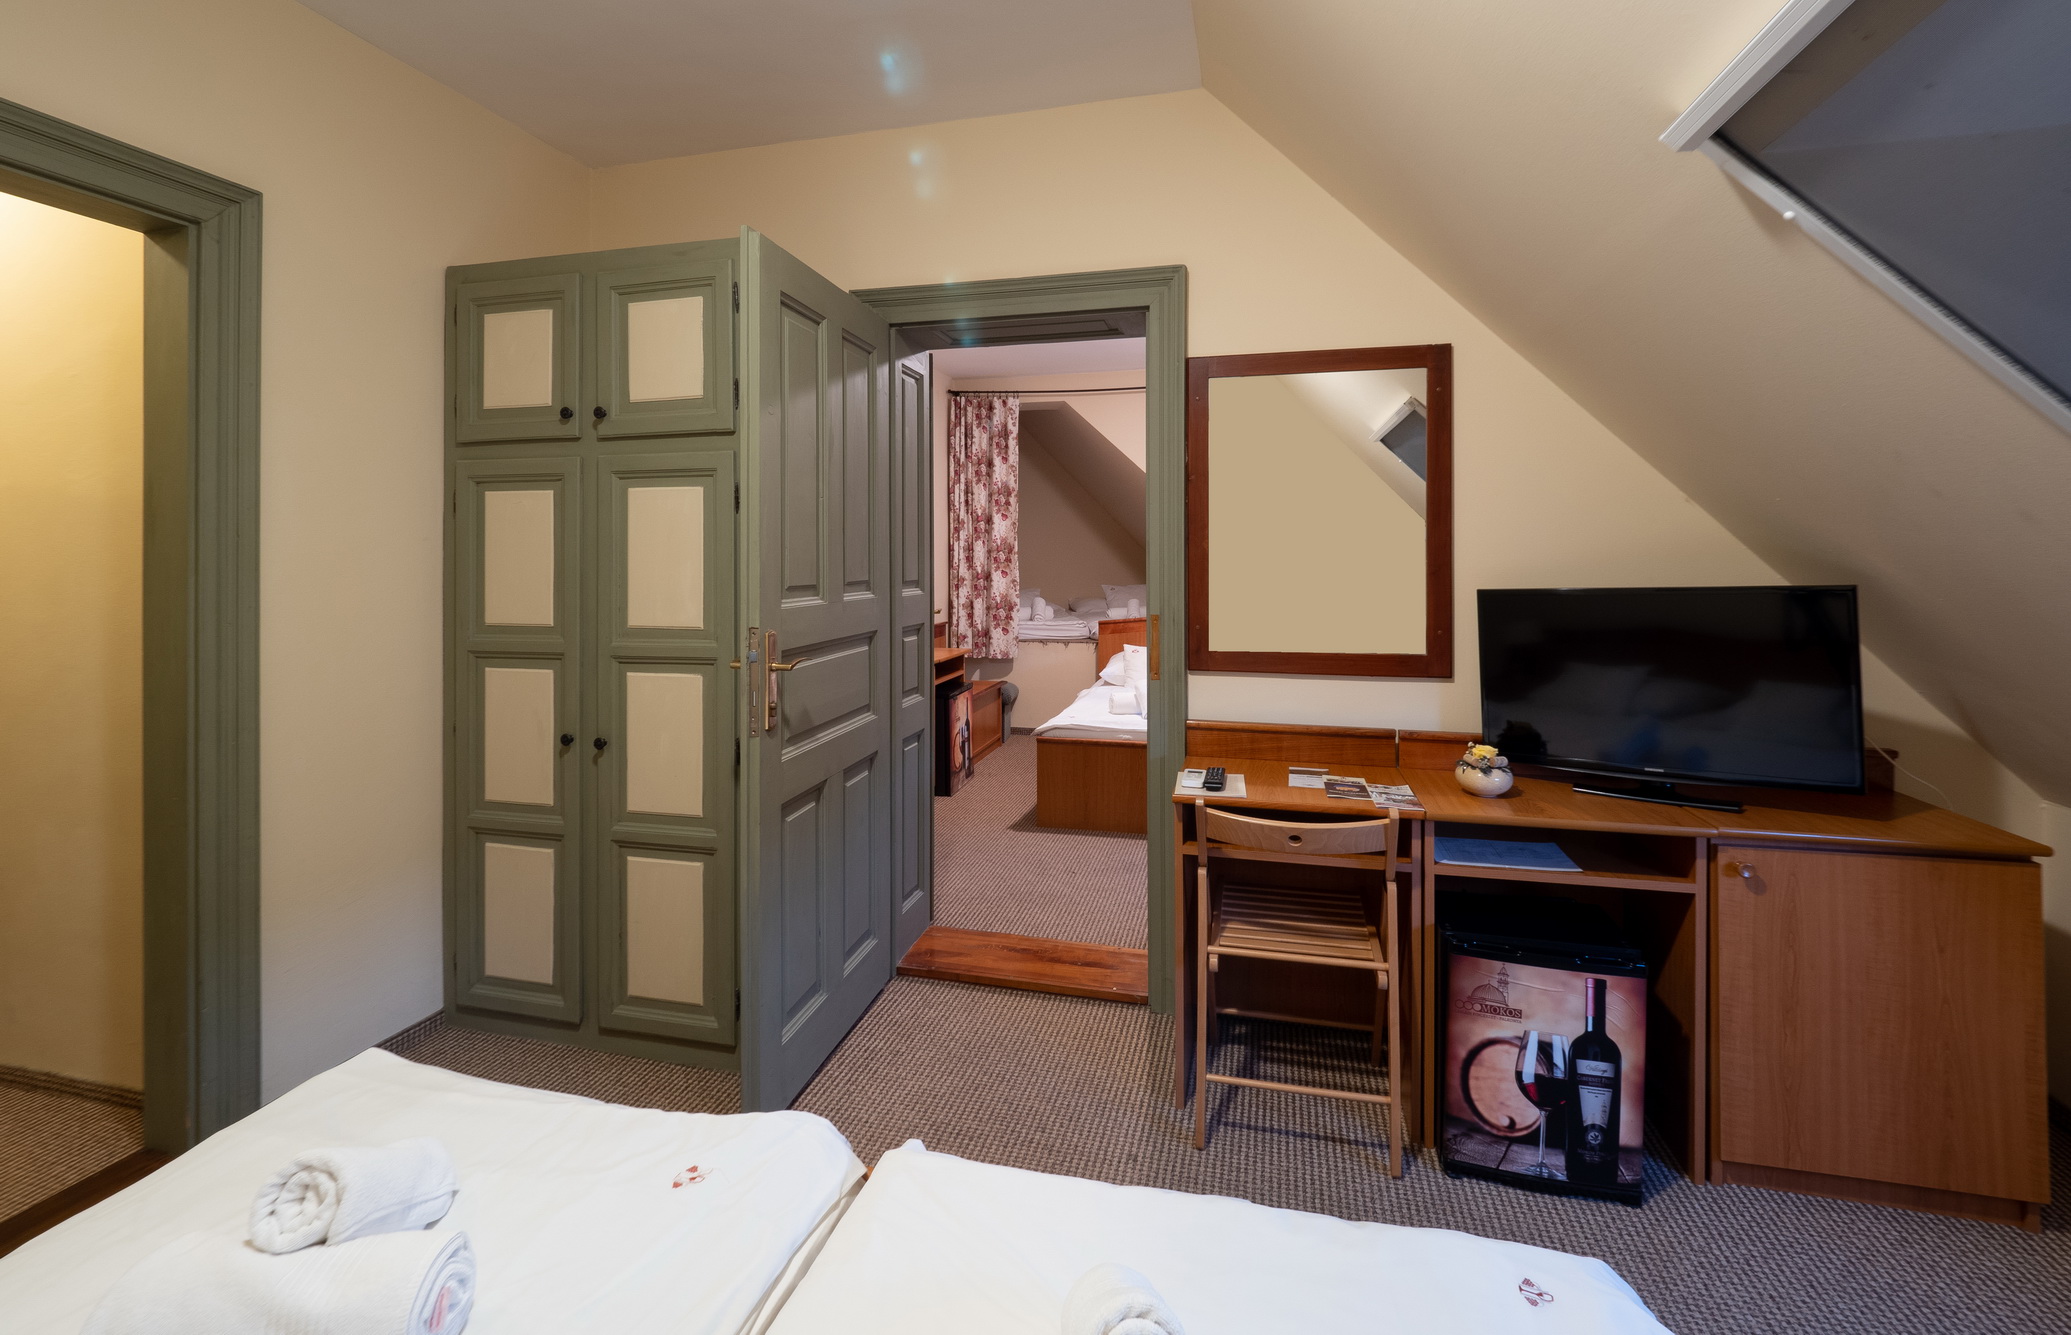 A Hotel Cabernet családi kuckós szobája, a képen egy dupla ágy és egy összenyitható plusz szoba is látható, valamint tévé, íróasztal, kis hűtő